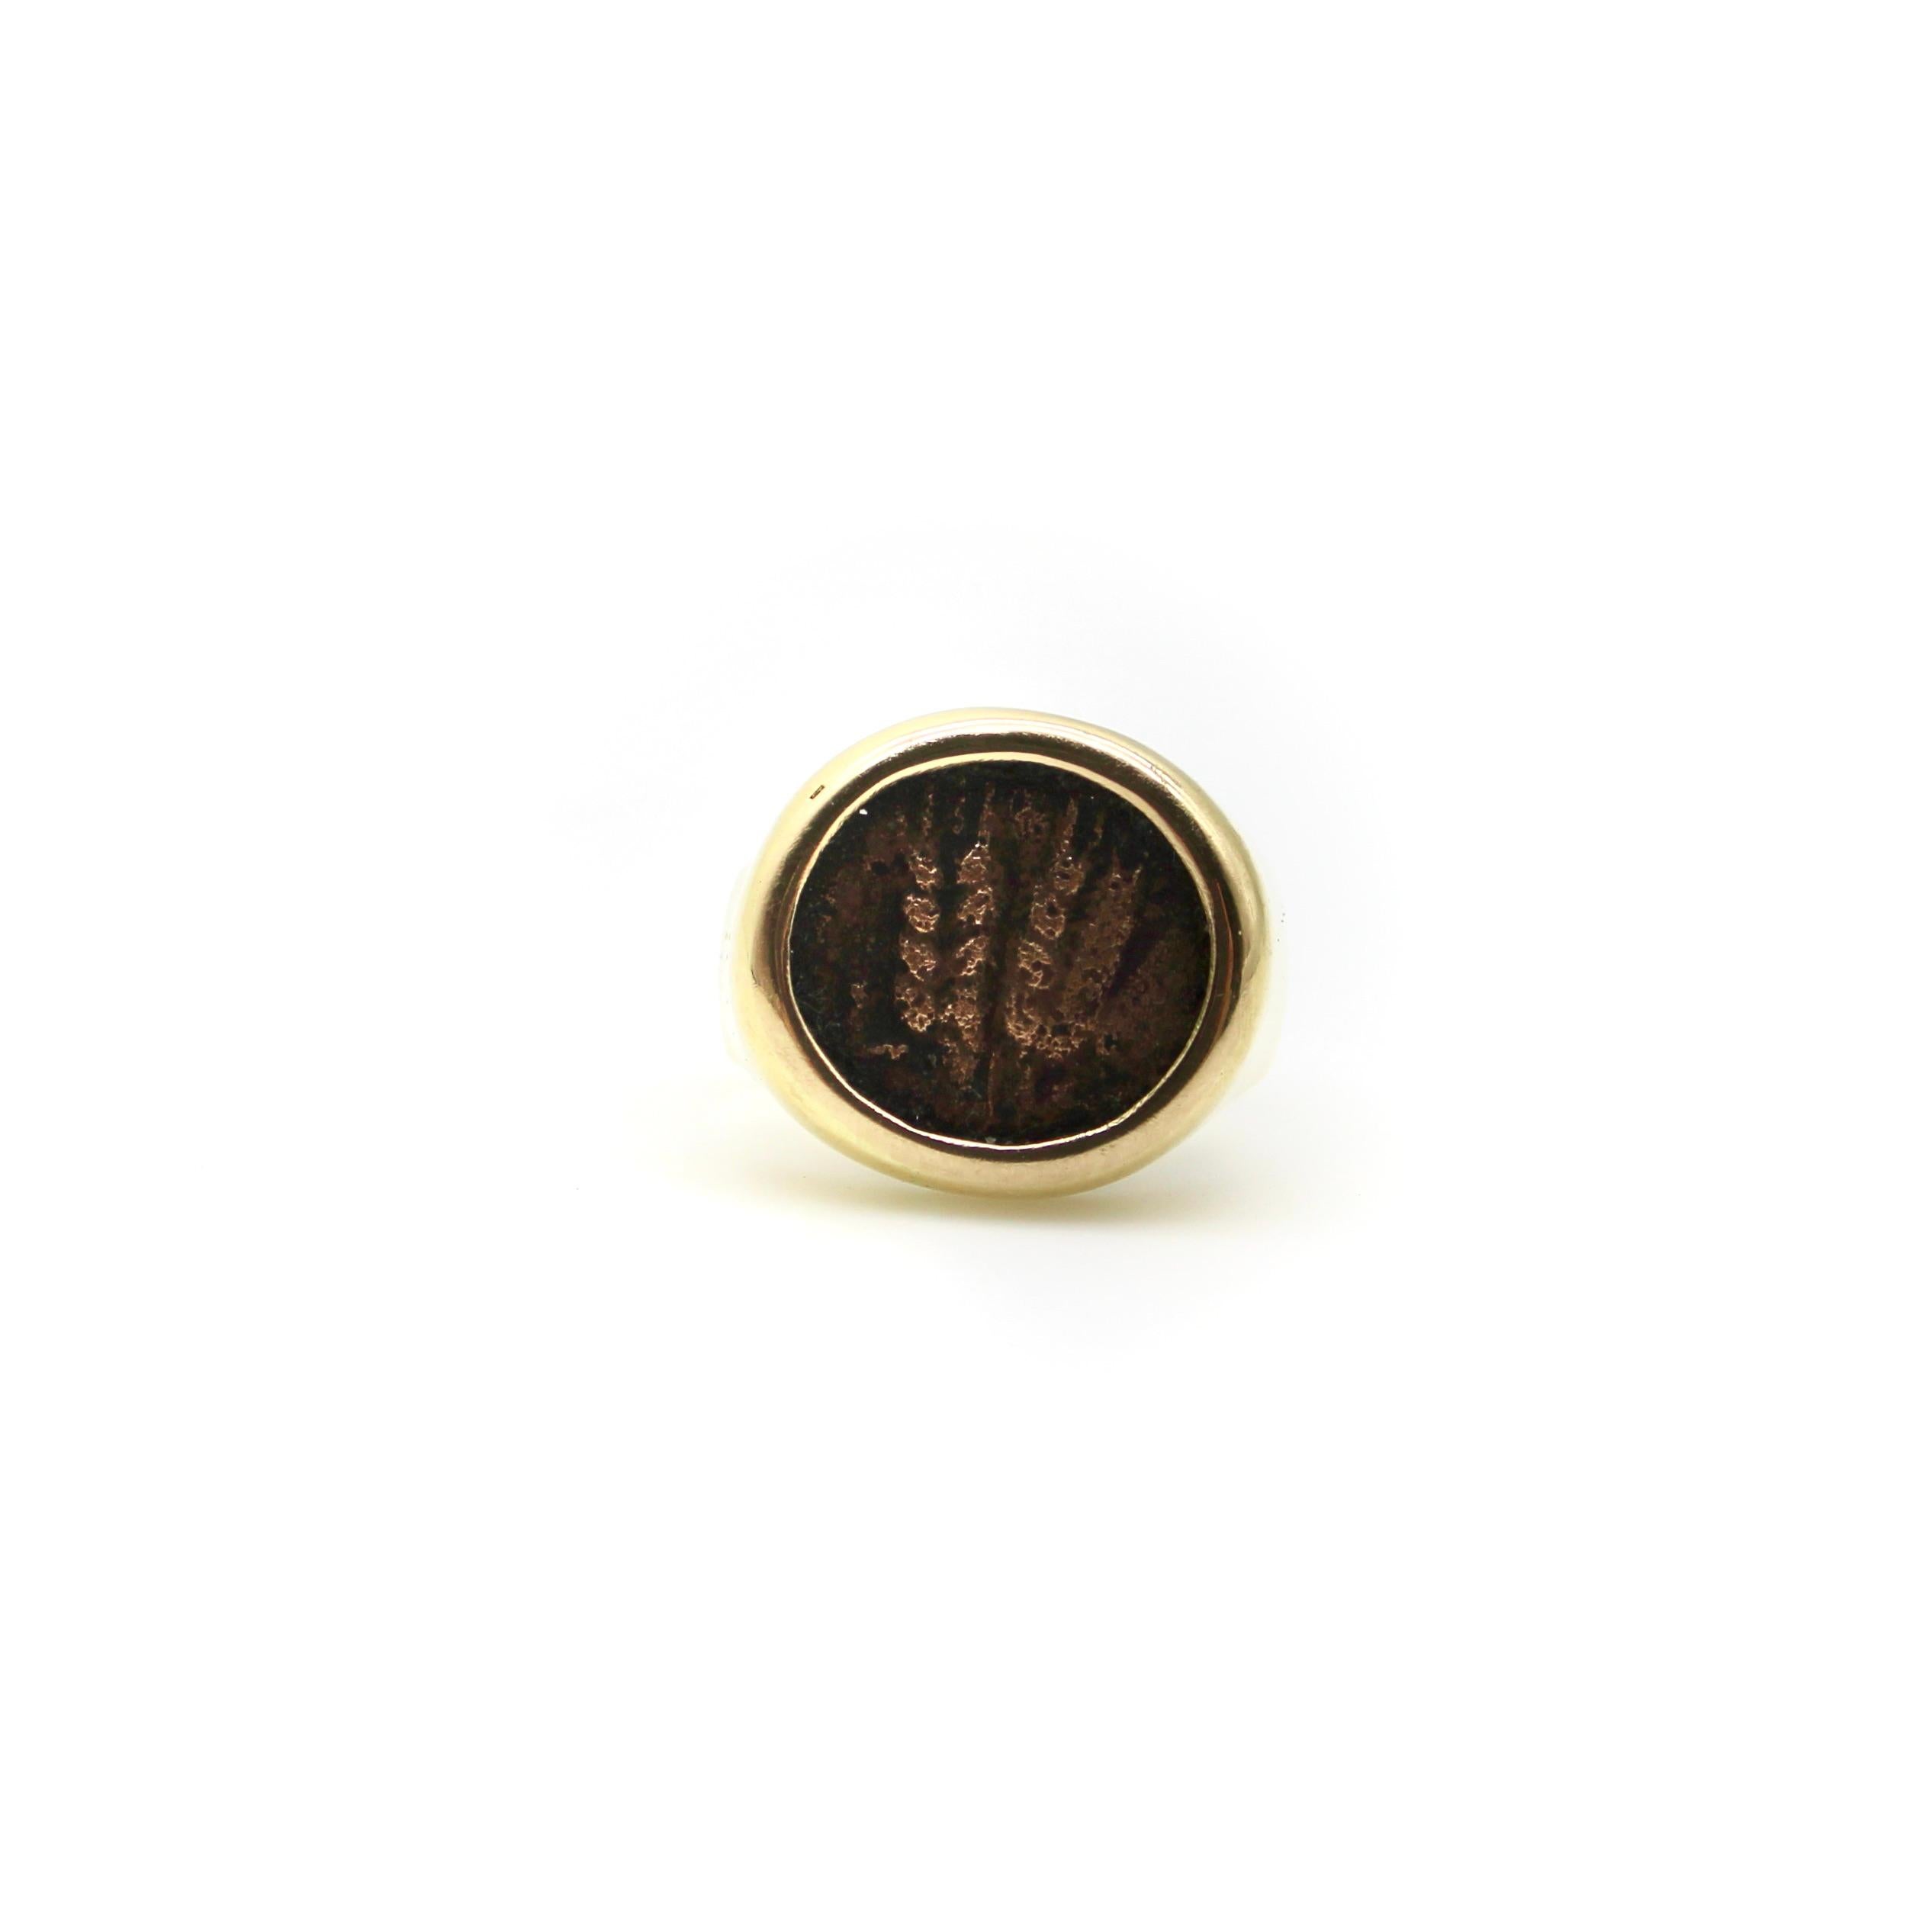 Dieser Ring aus 14 Karat Gold zeigt eine antike Münze, die 42 n. Chr. in Jerusalem geprägt wurde.  Die Münze wurde während der Herrschaft von Herodes Agrippa I. - dem Enkel von Harod dem Großen - geprägt, der über das gesamte Land Israel und